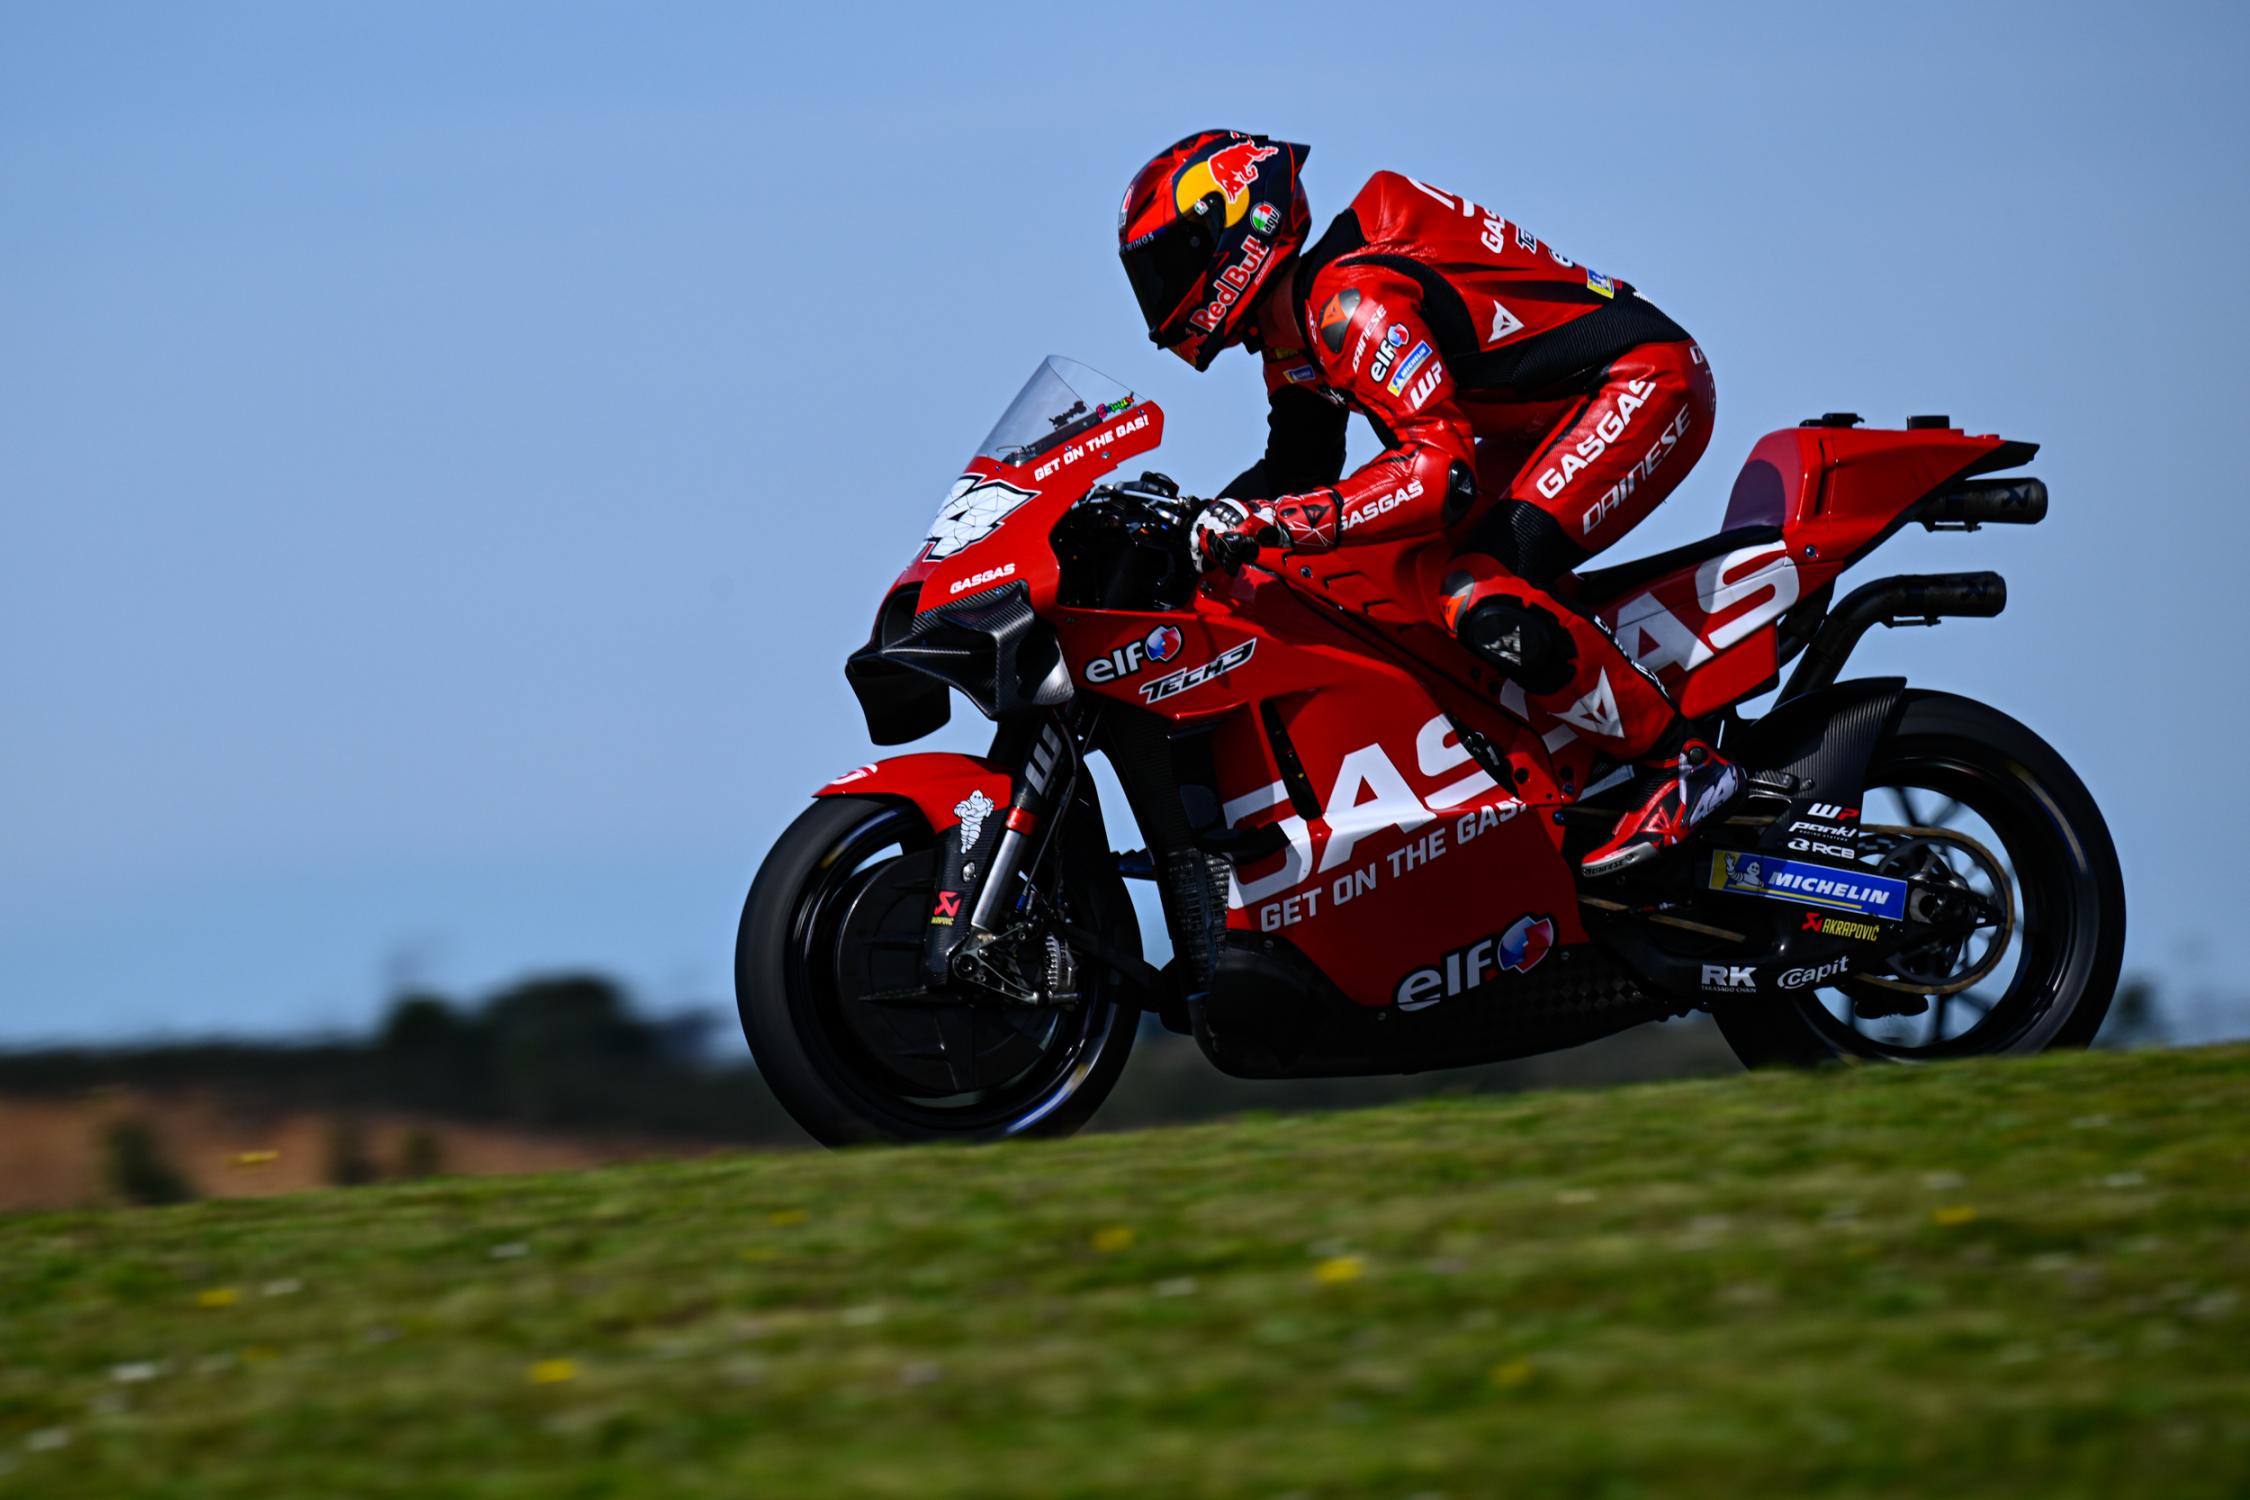 MotoGP/Portugal: Segunda sessão de treinos interrompida após queda de Pol  Espargaró